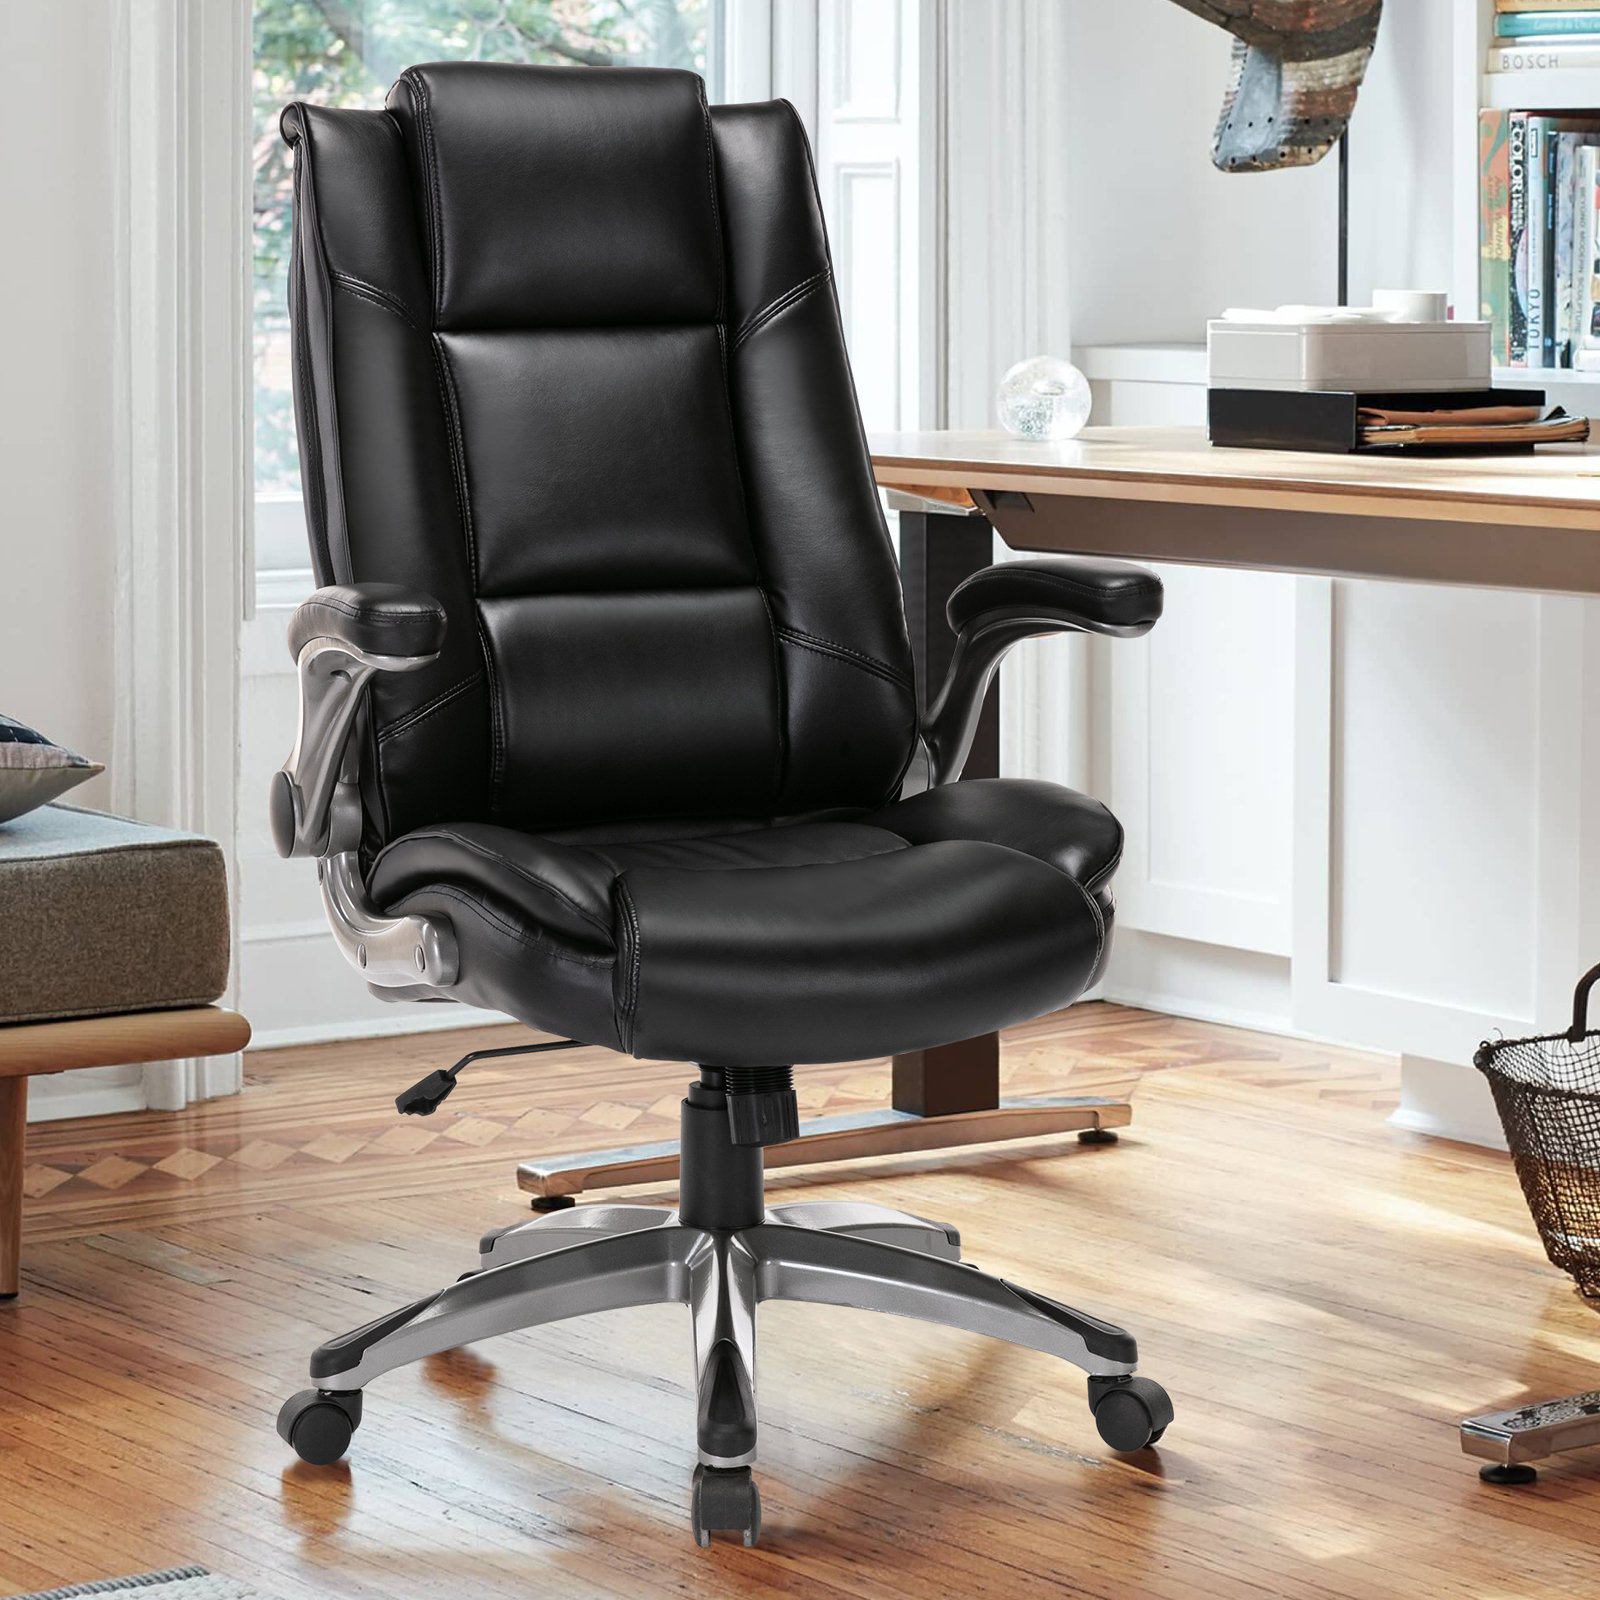 https://assets.wfcdn.com/im/35384910/compr-r85/2137/213710880/ergonomic-executive-chair-with-headrest.jpg